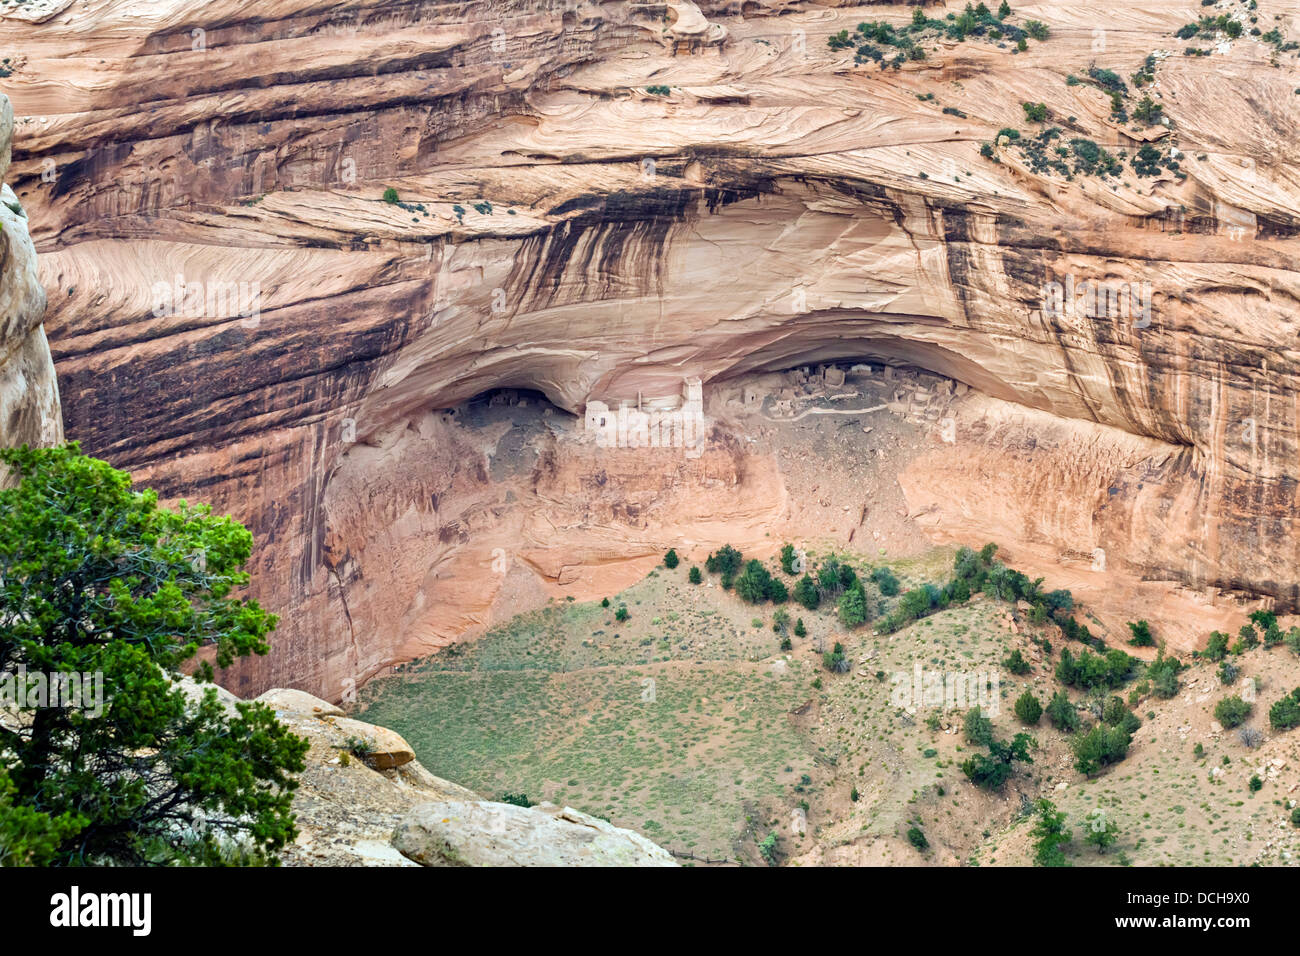 La 'Mfactices Cave' ruines Anasazi, vu de l'Amérique du Rim au Canyon de Chelly National Monument, Chinle, Arizona, USA Banque D'Images